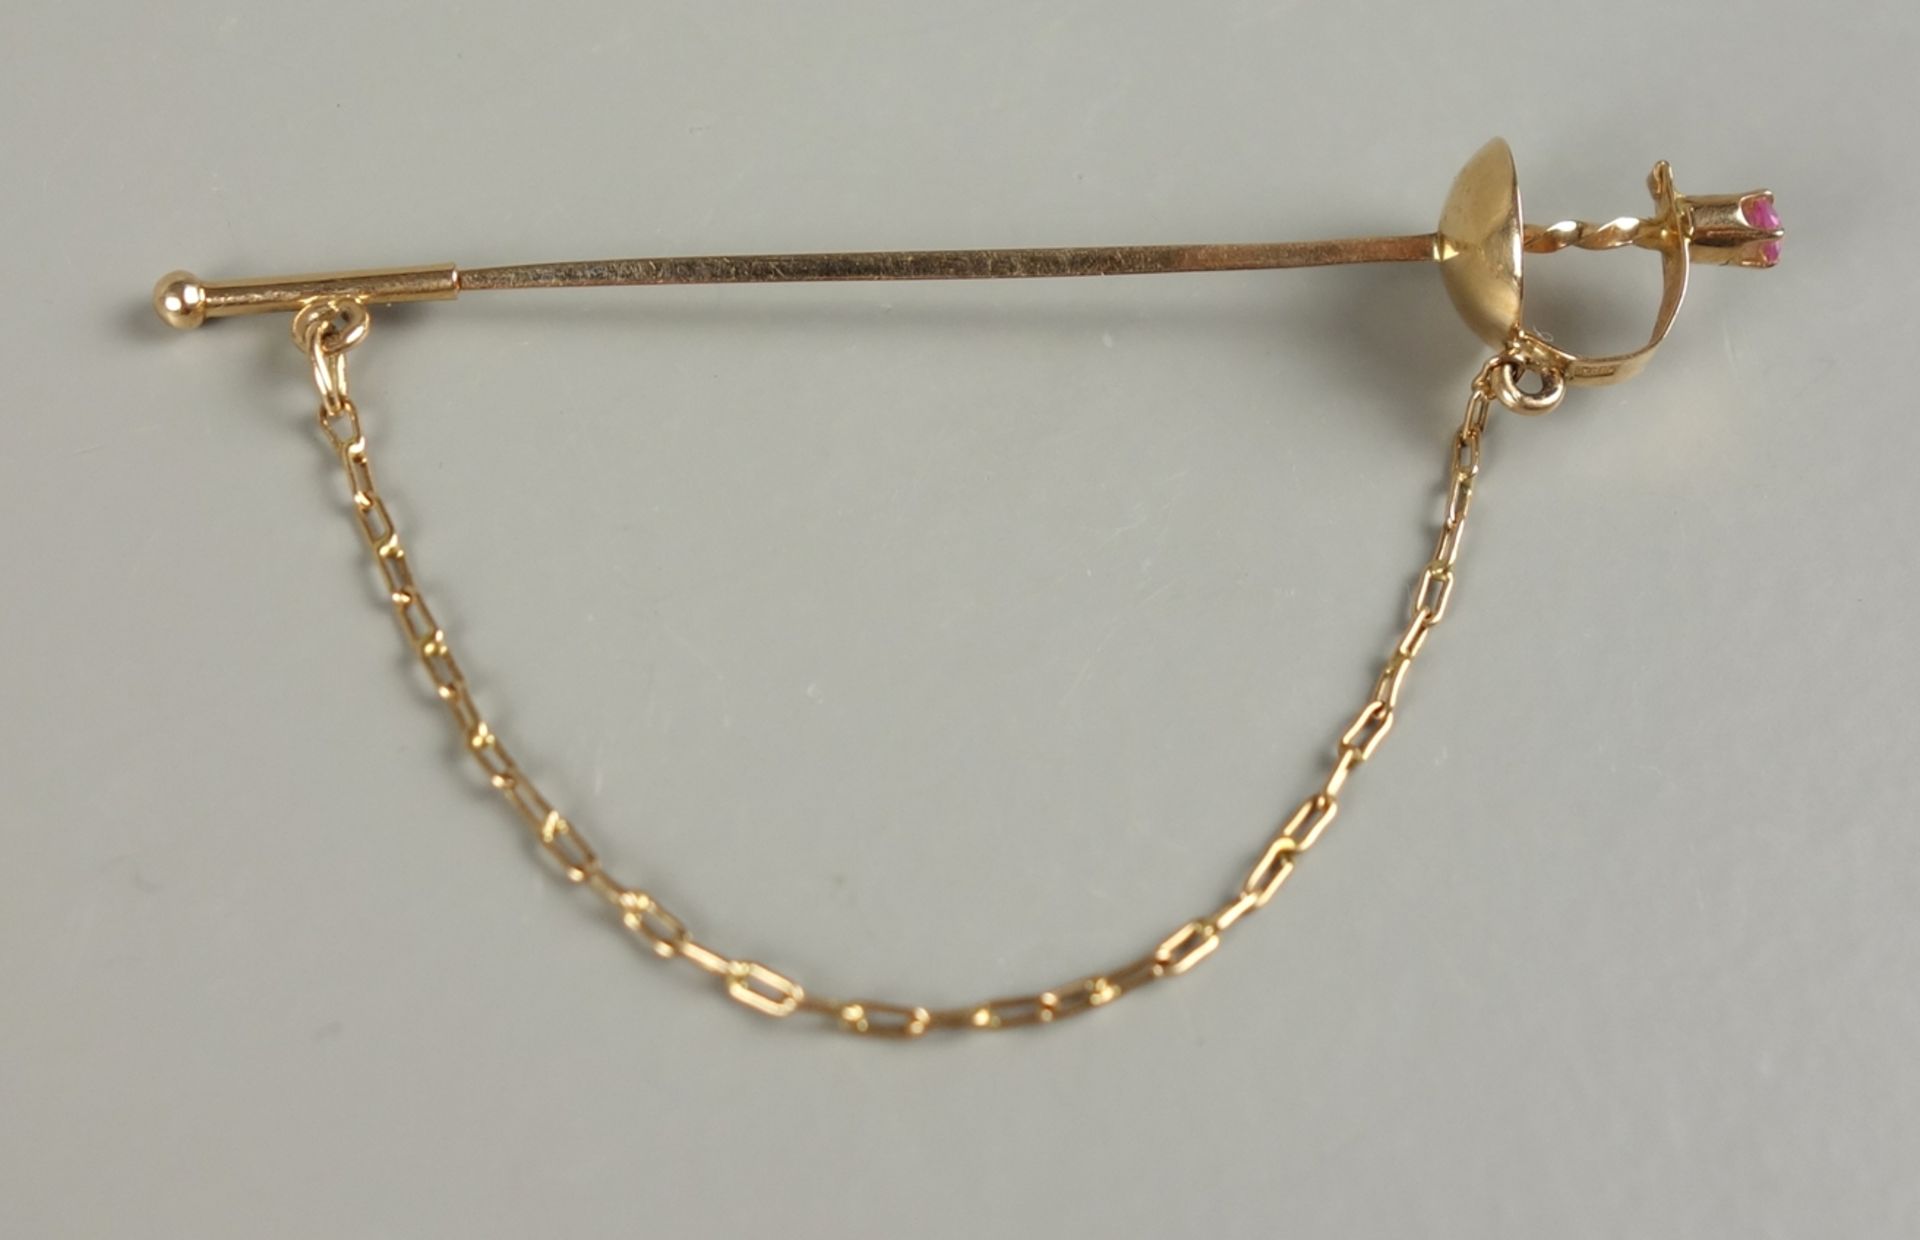 Krawattennadel in Form eines Floretts, 583er Gold, Gew.2,03g, L.6,8cmm mit Sich - Bild 2 aus 2